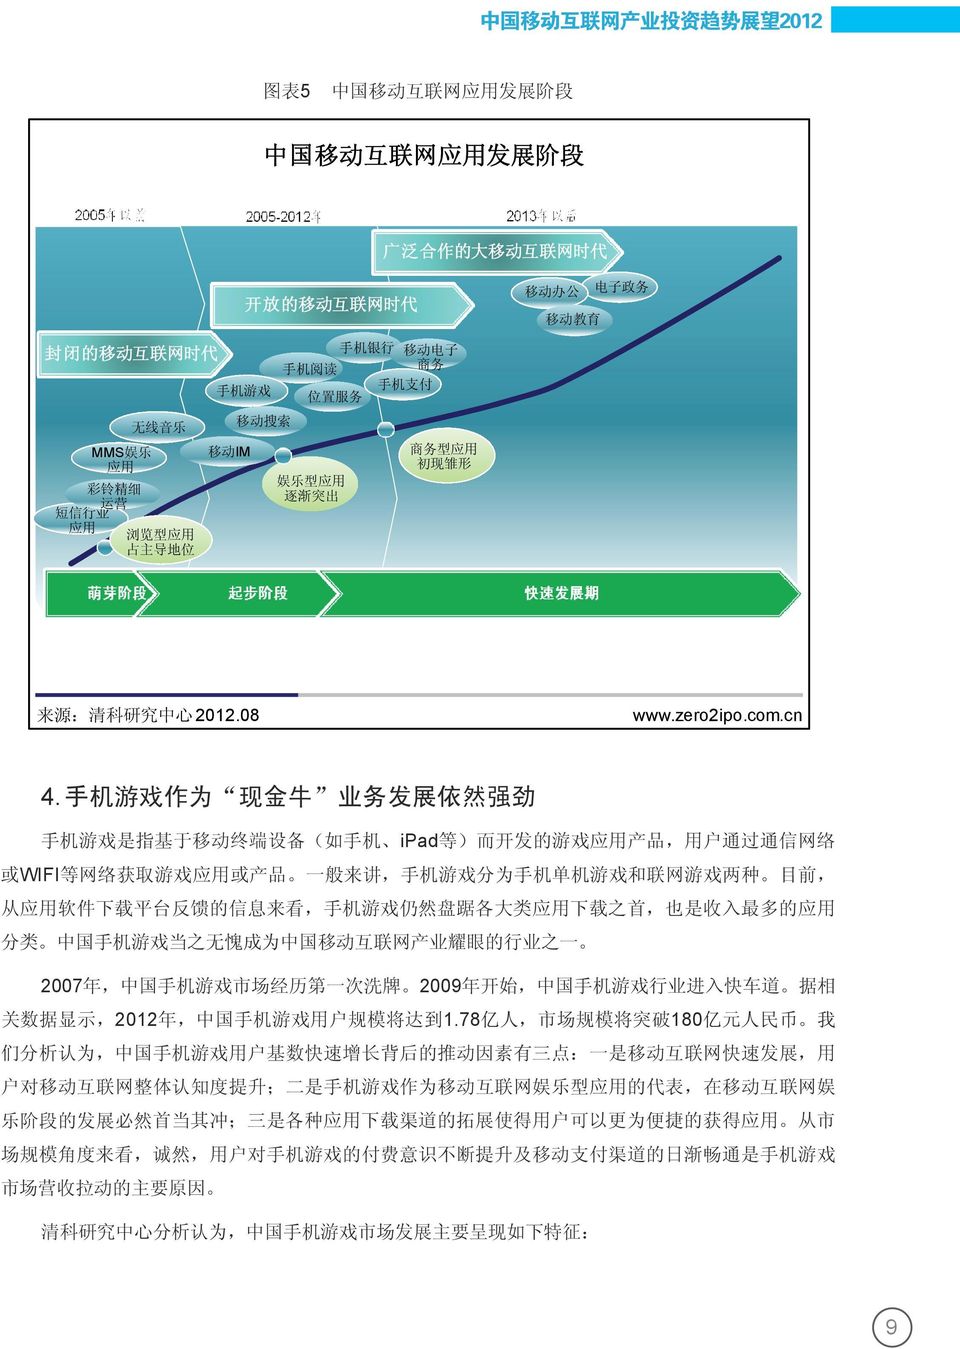 中国手机游戏当之无愧成为中国移动互联网产业耀眼的行业之一 2007年 中国手机游戏市场经历第一次洗牌 2009年开始 中国手机游戏行业进入快车道 据相 关数据显示 2012年 中国手机游戏用户规模将达到1.